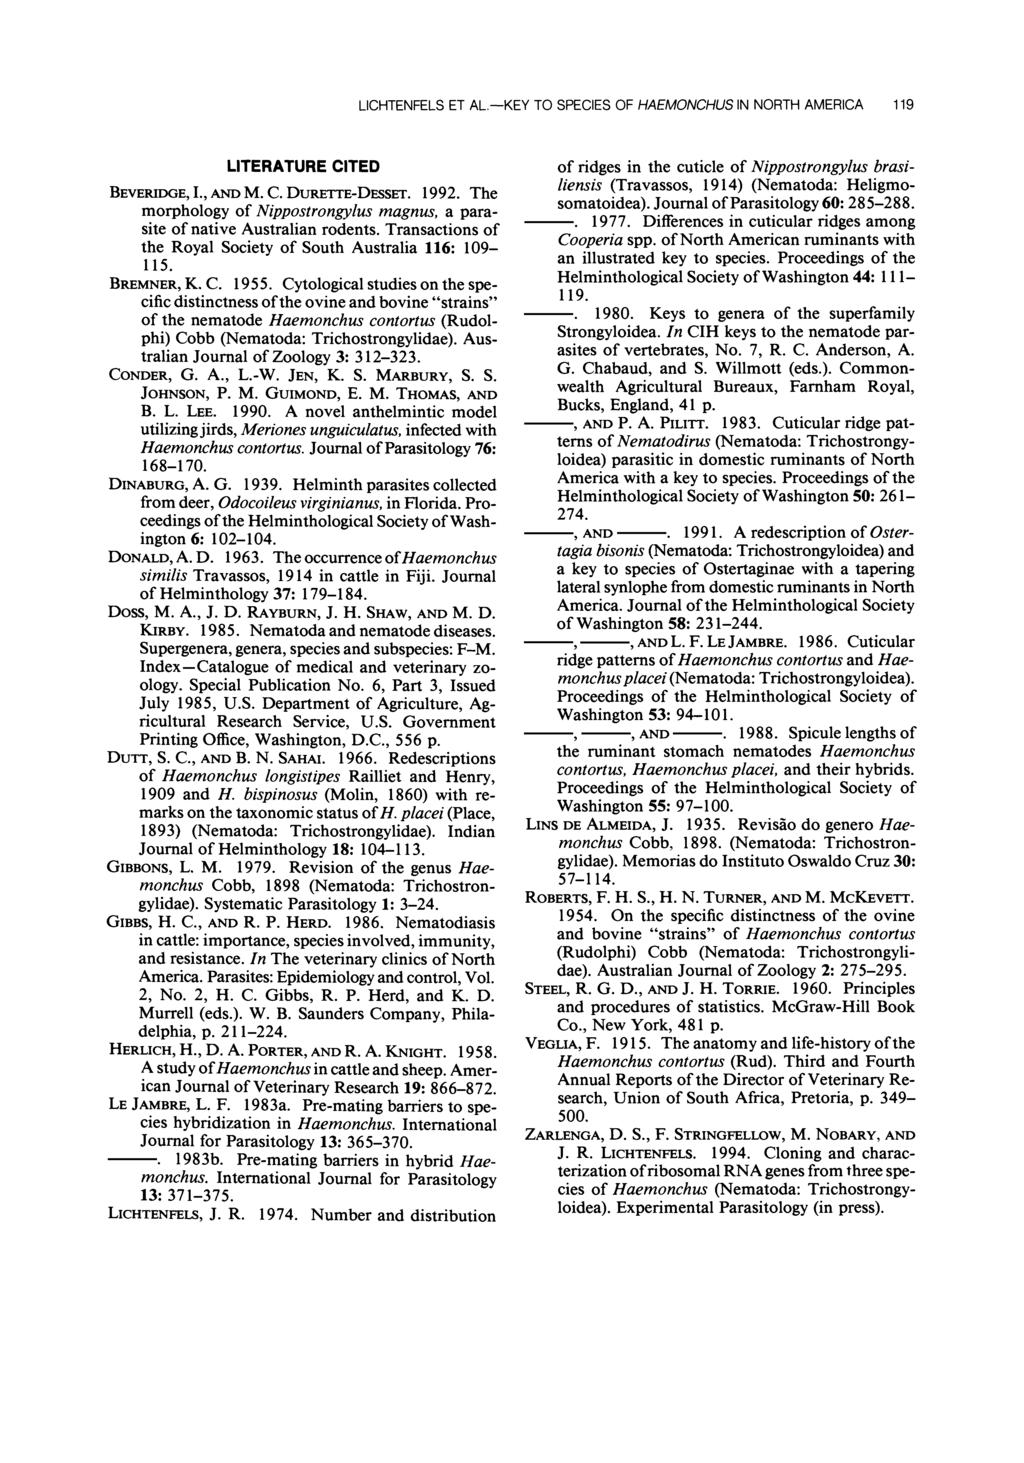 LCHTENFELS ET TO SPECES OF HAEMONCHUS N NORTH AMERCA 119 AL.-KEY BEVERDGE,., LTERATURE CTED AND M. C. DURETTE-DESSET. 1992.